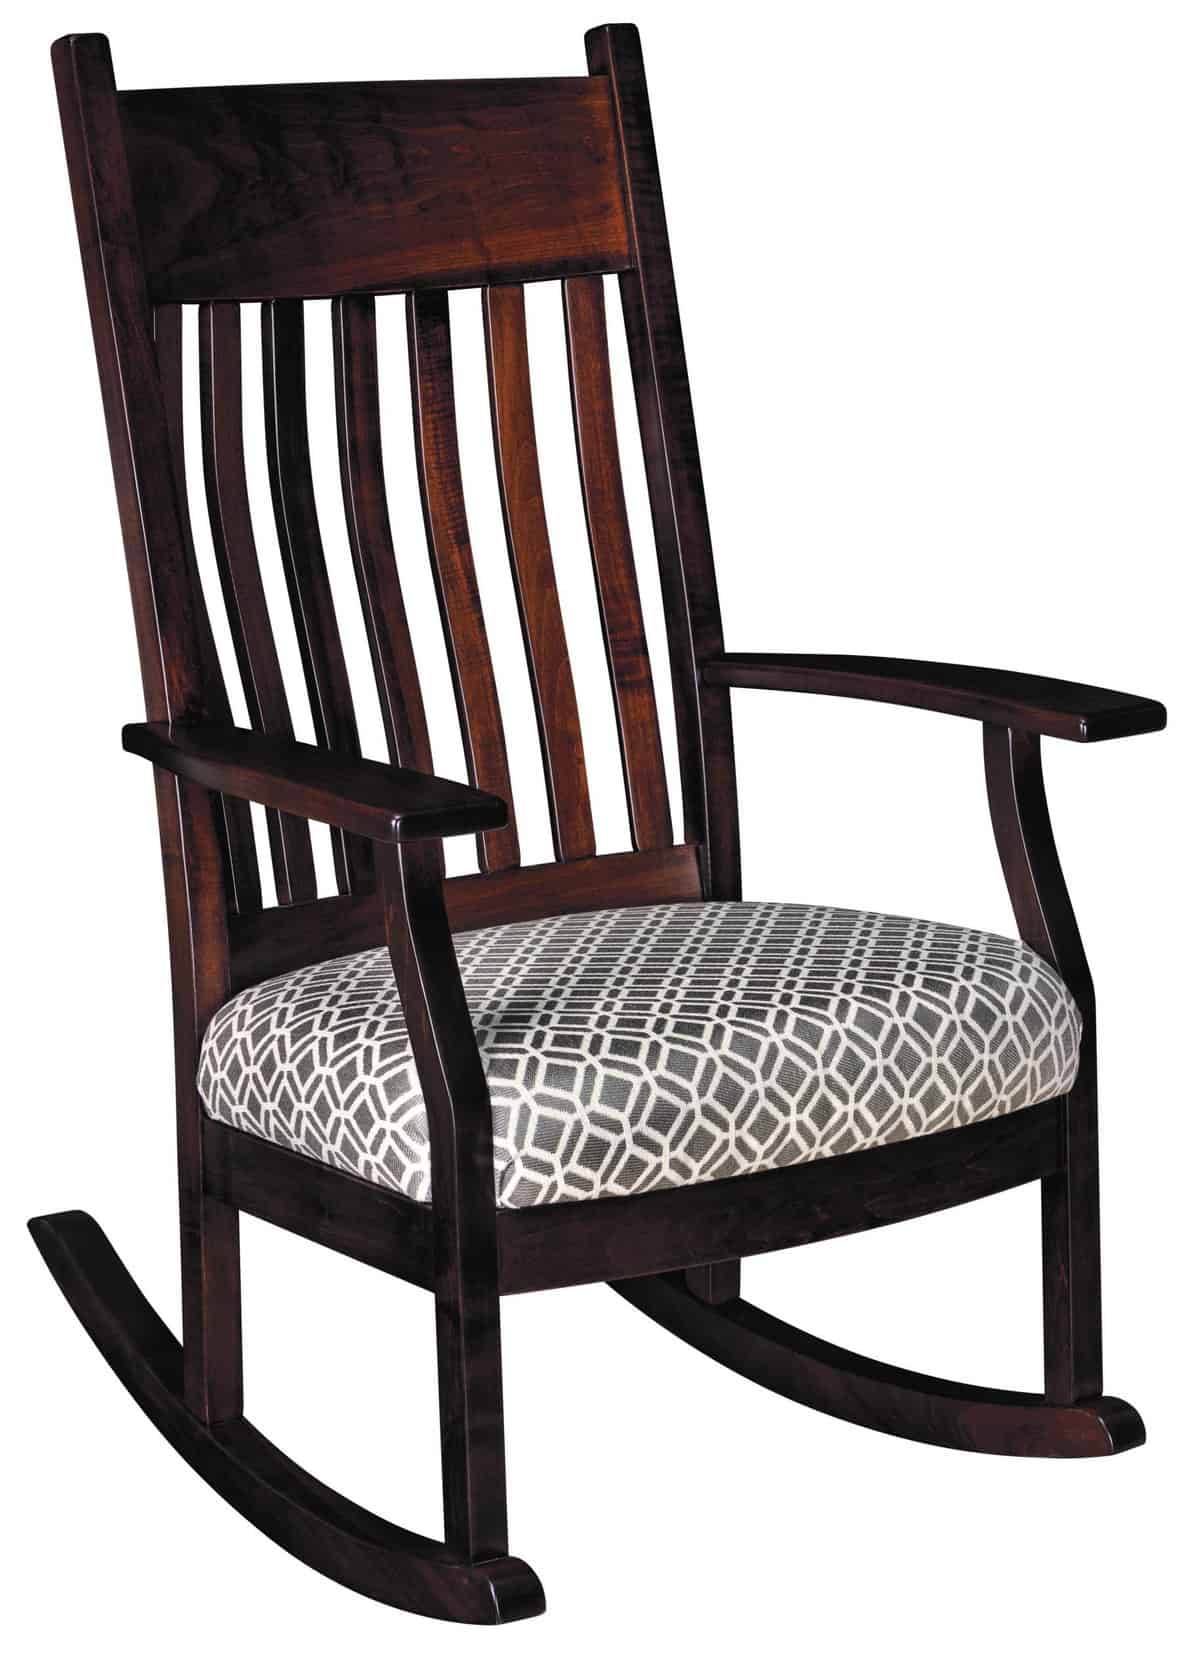 Hardwood Rocking Chairs